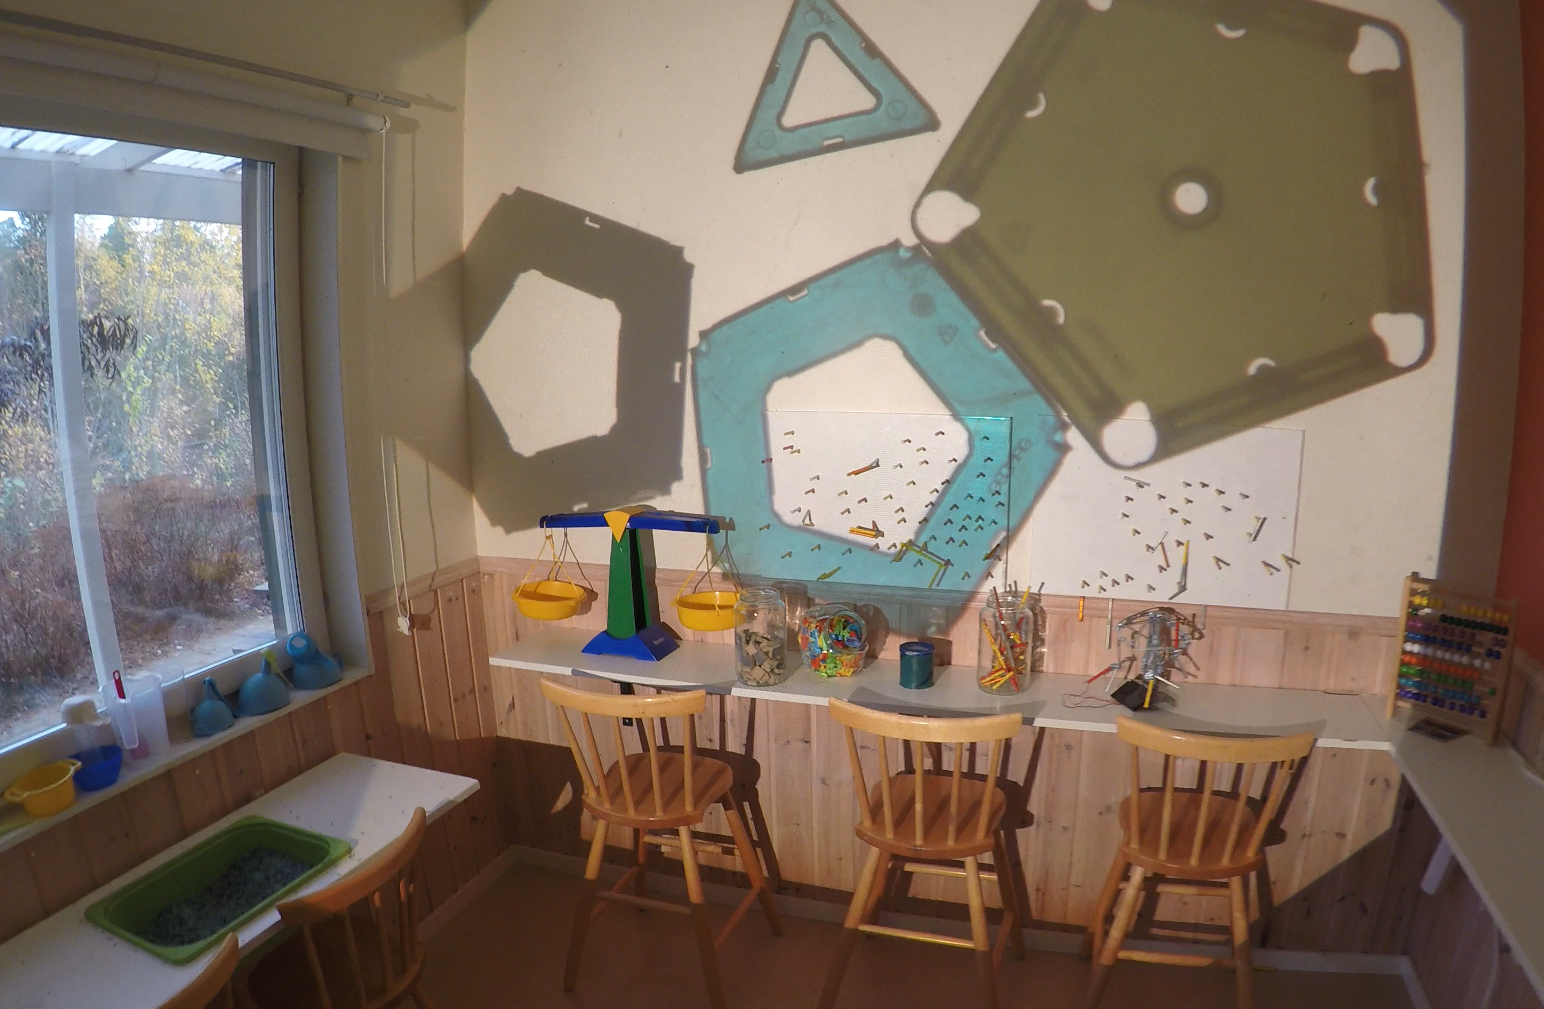 ett rum med olika undersökningsmöjligheter där en overhead skapar olika mönster på väggen.